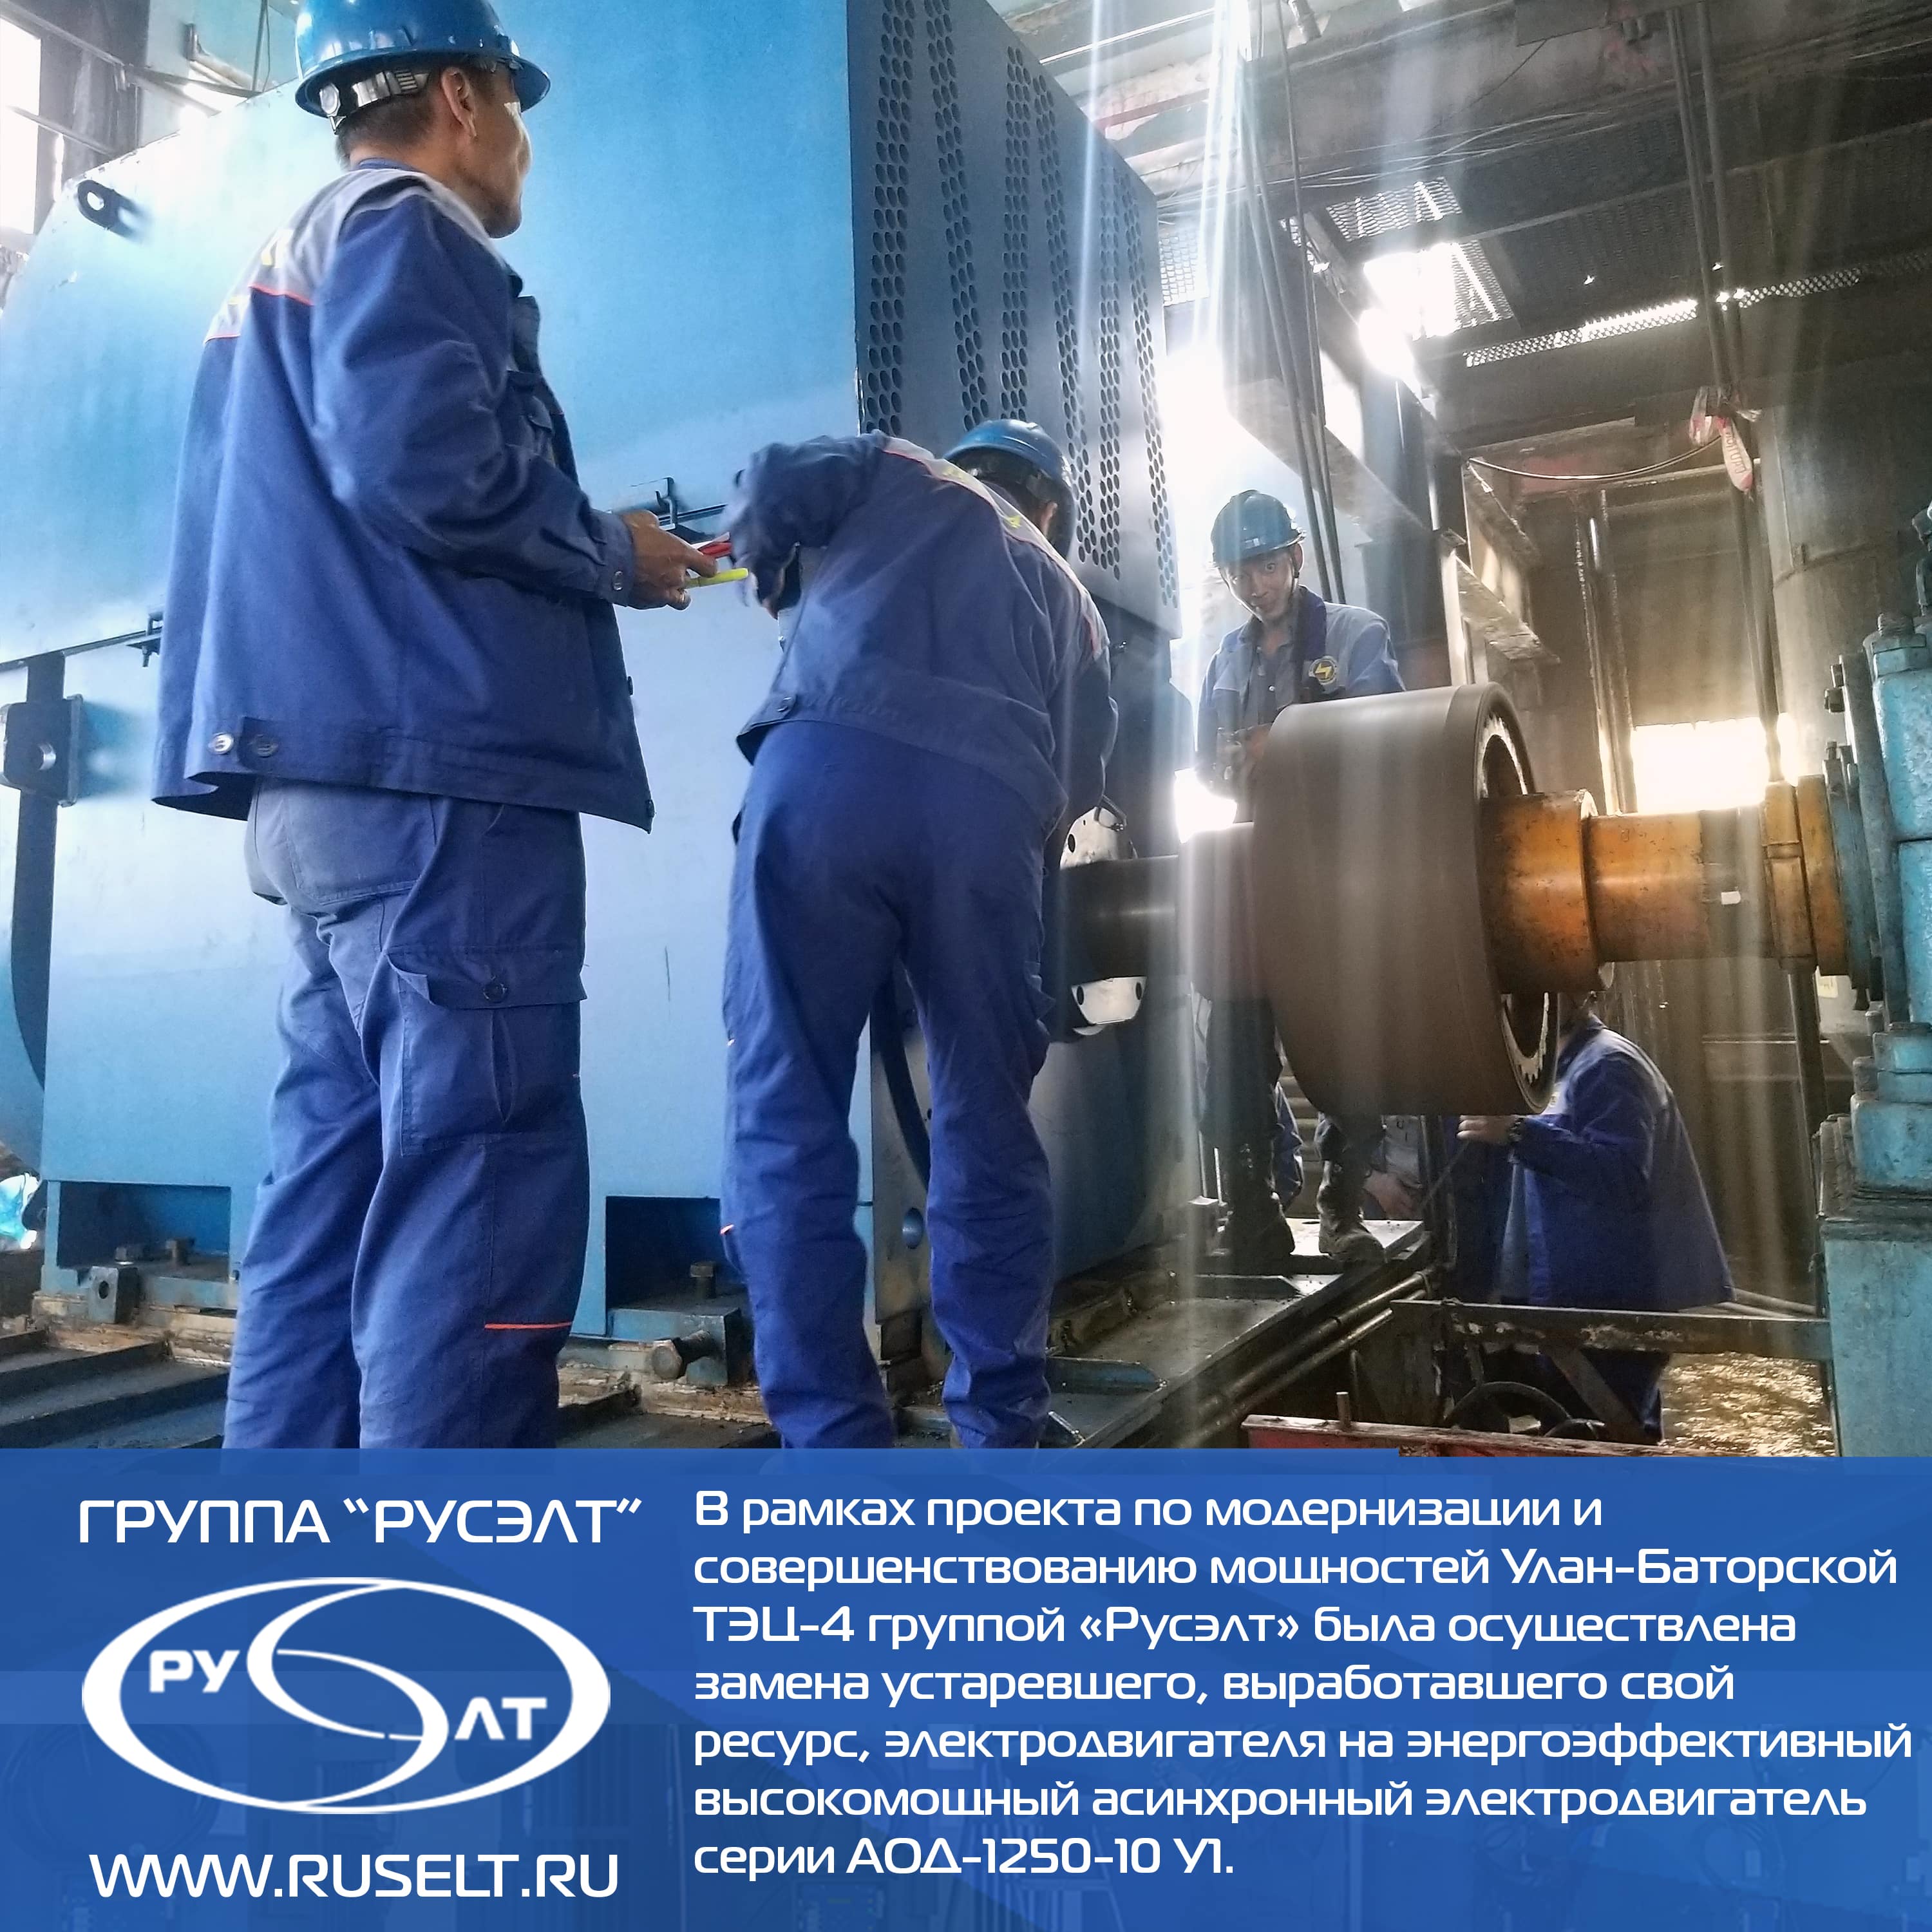 Модернизация мельничного оборудования ТЭЦ-4 г. Улан-Батор.